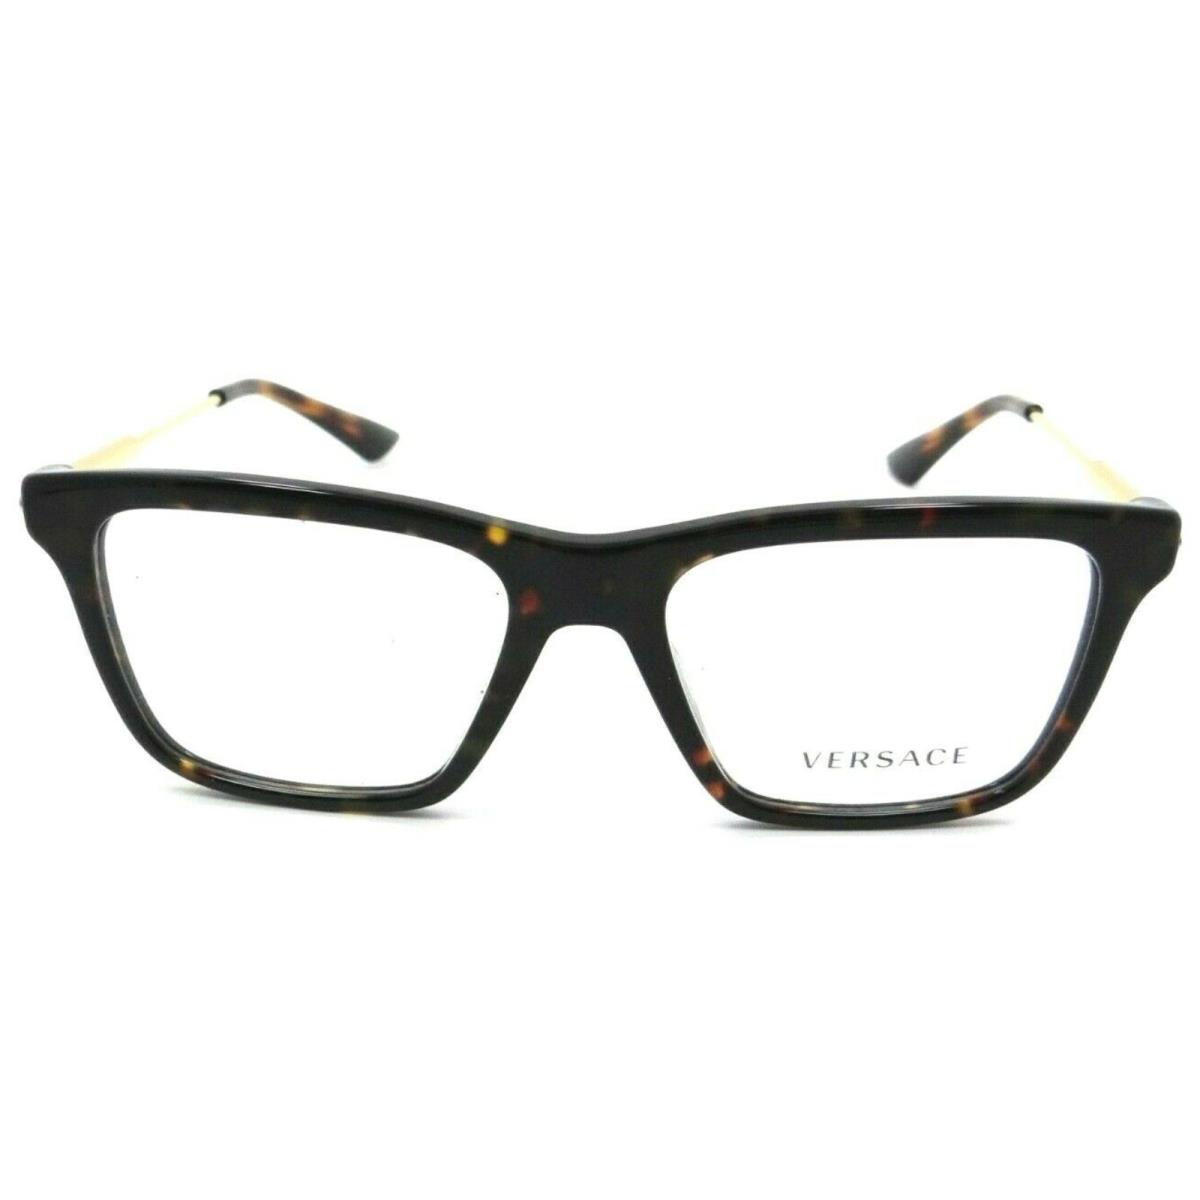 Versace Rx-able Eyeglasses Mod. 3308 108 53-17 145 Tortoise Gold Frames - Frame: Tortoise & Gold, Lens: